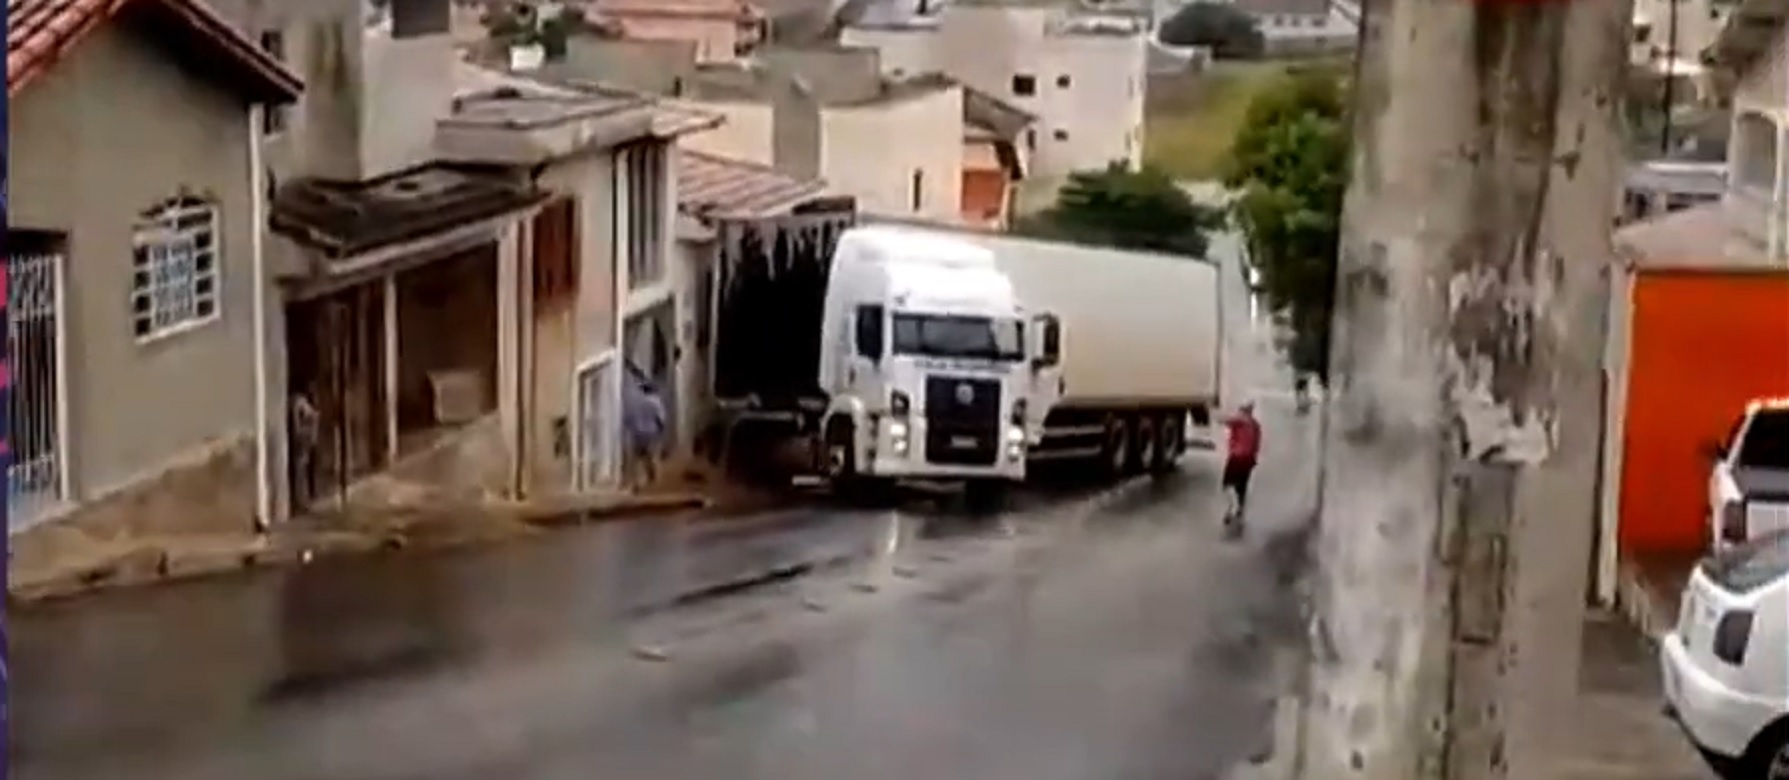 Período chuvoso, caminhão patina e atinge casa